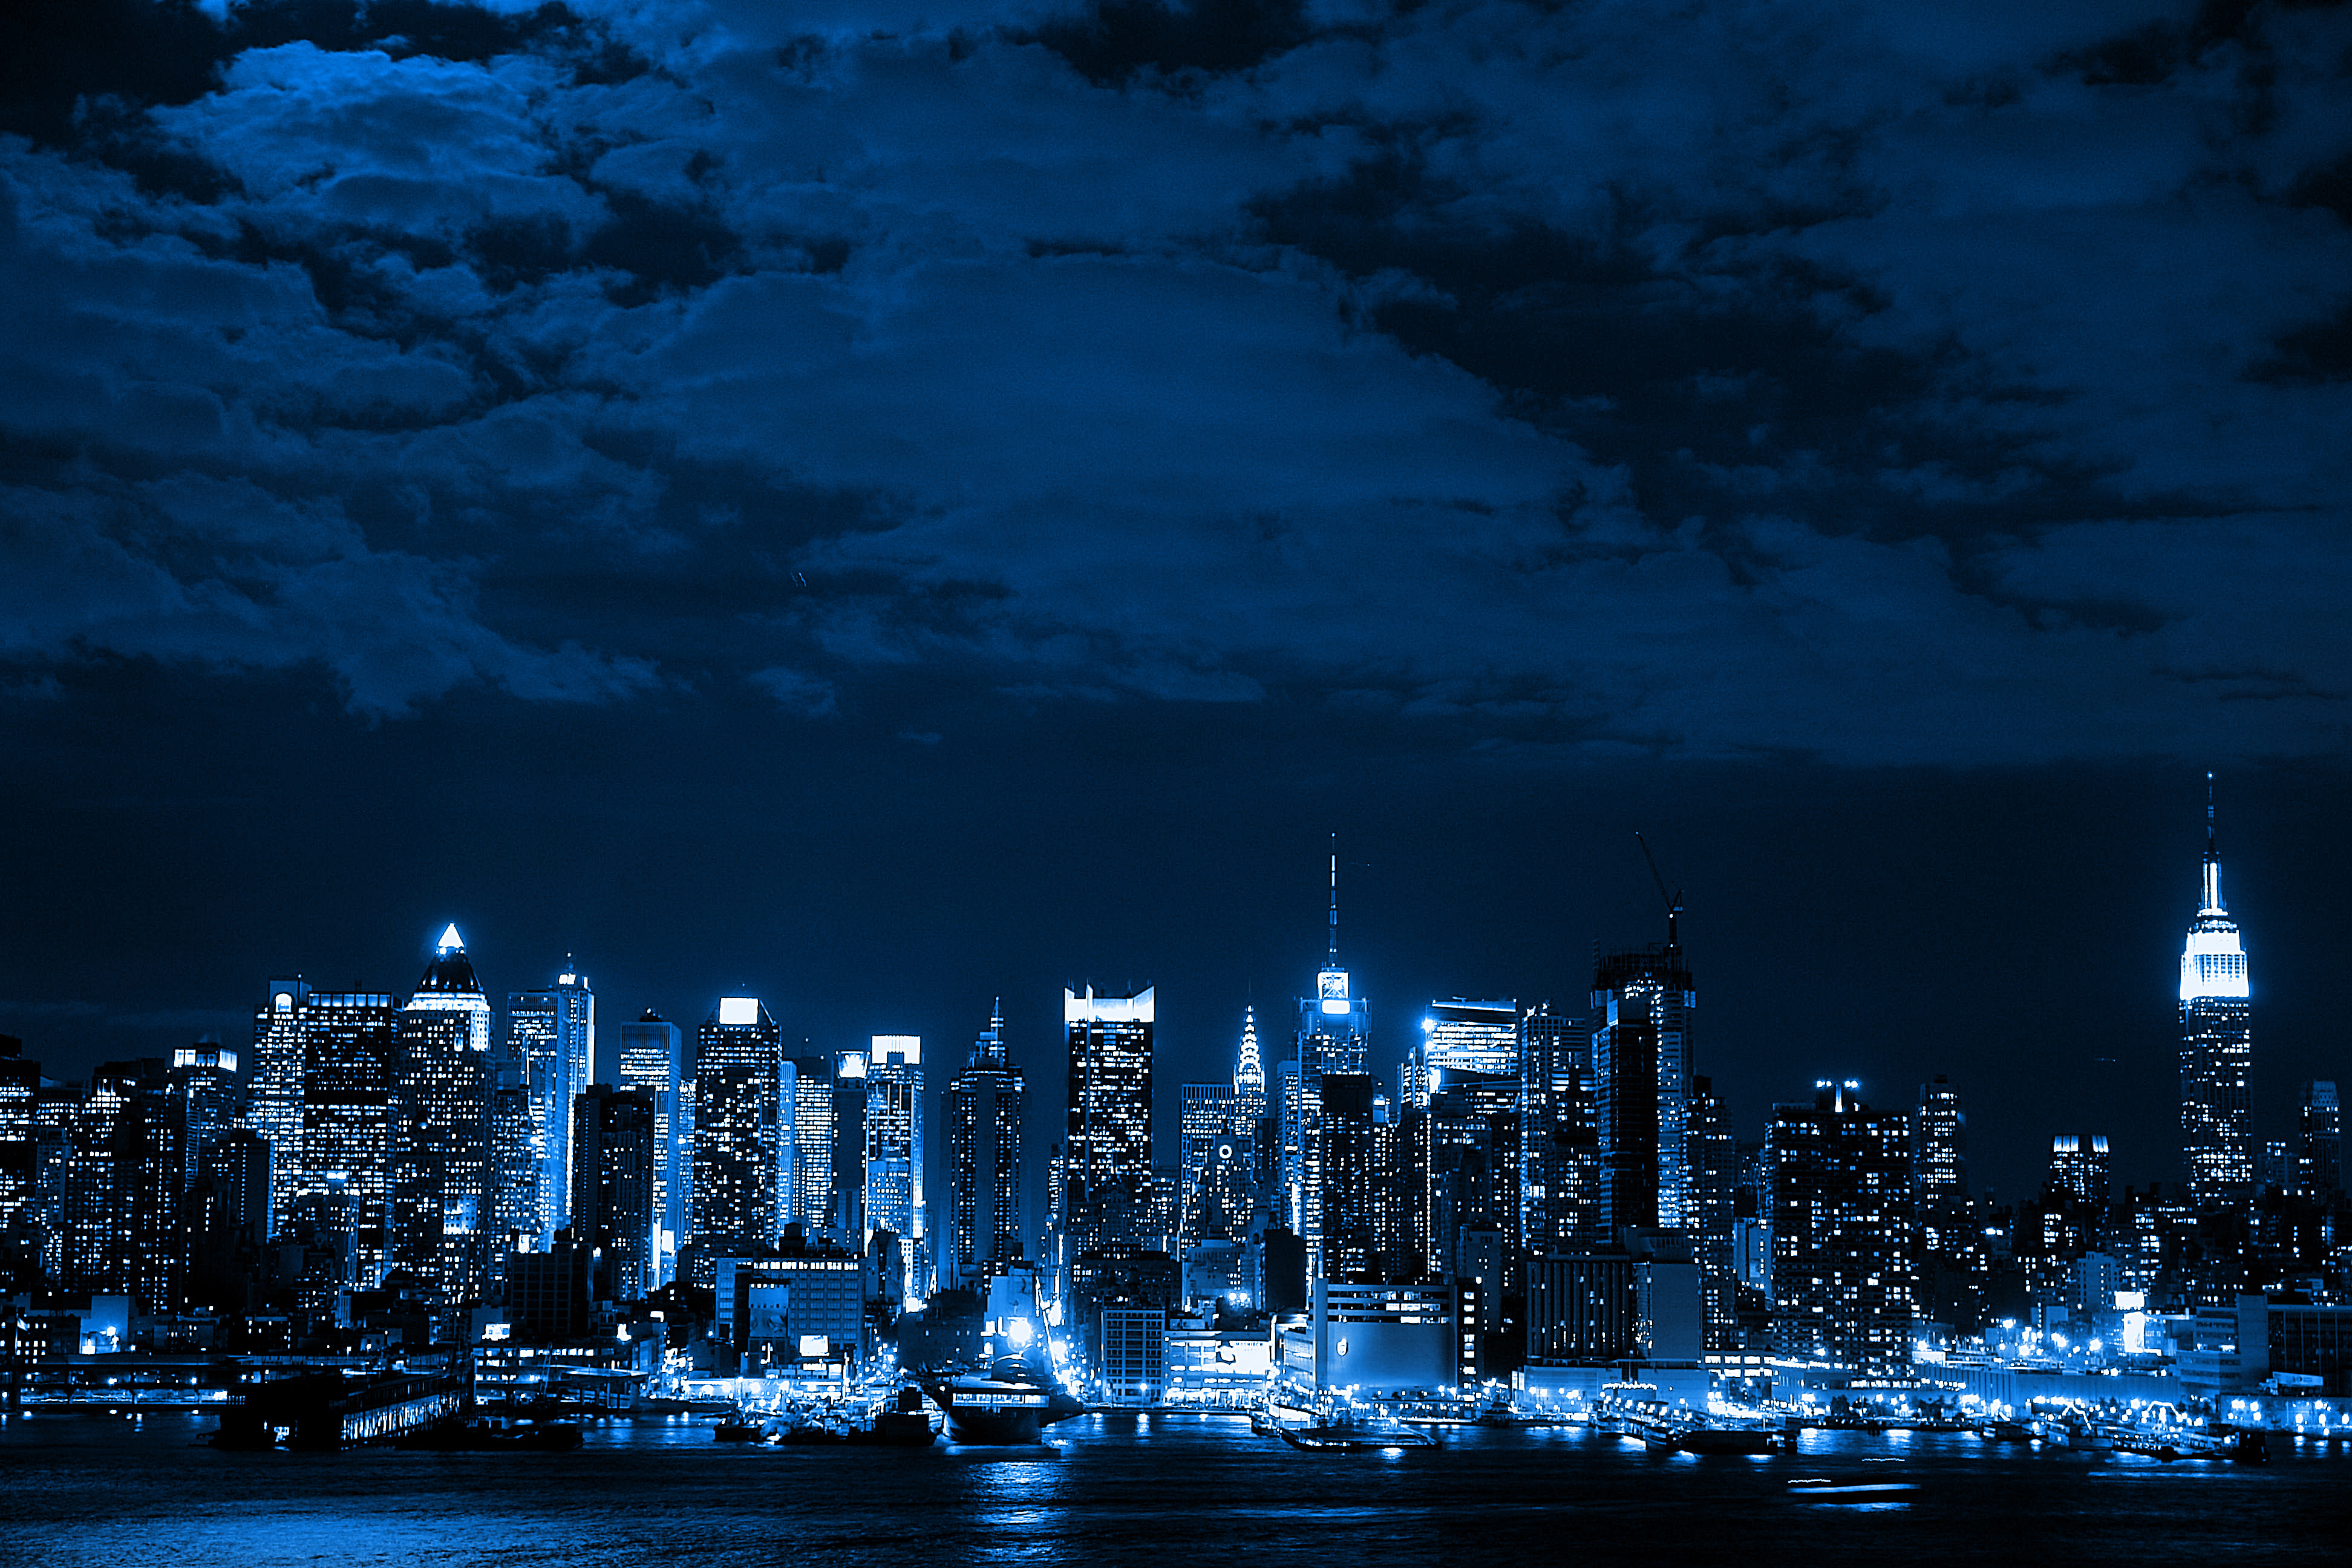 cityscapes, night, lights, urban - desktop wallpaper